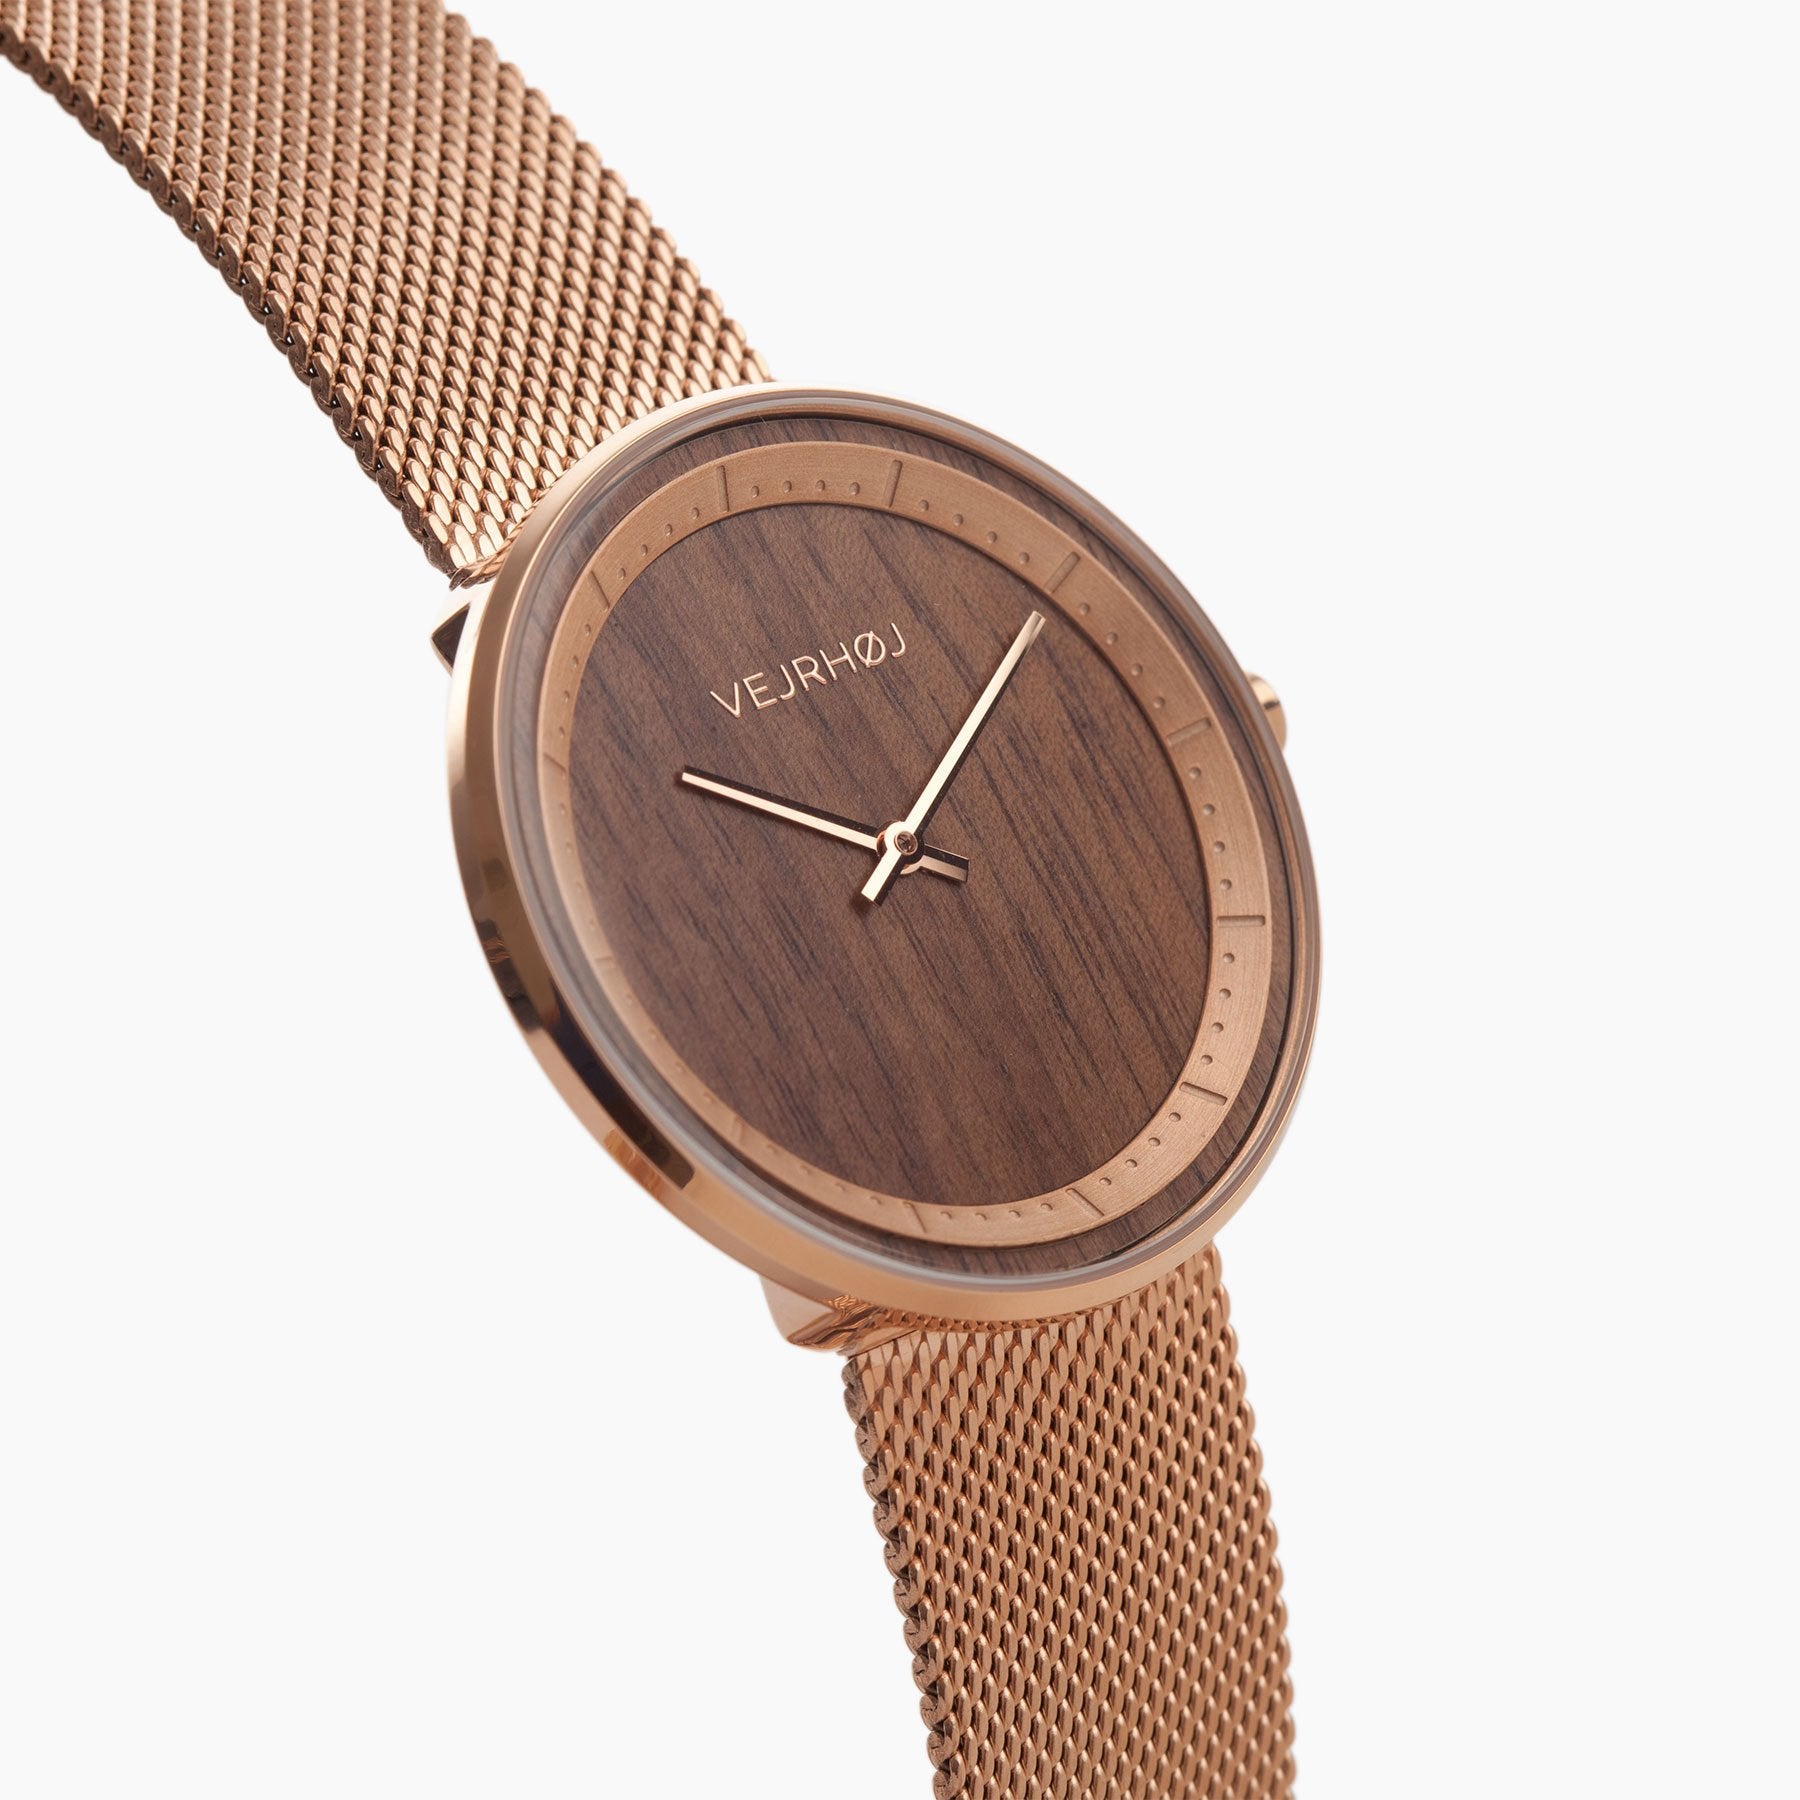 ローズゴールドが輝く北欧ミニマリズムデザインの木製腕時計 VEJRHØJ  The ROSE mesh